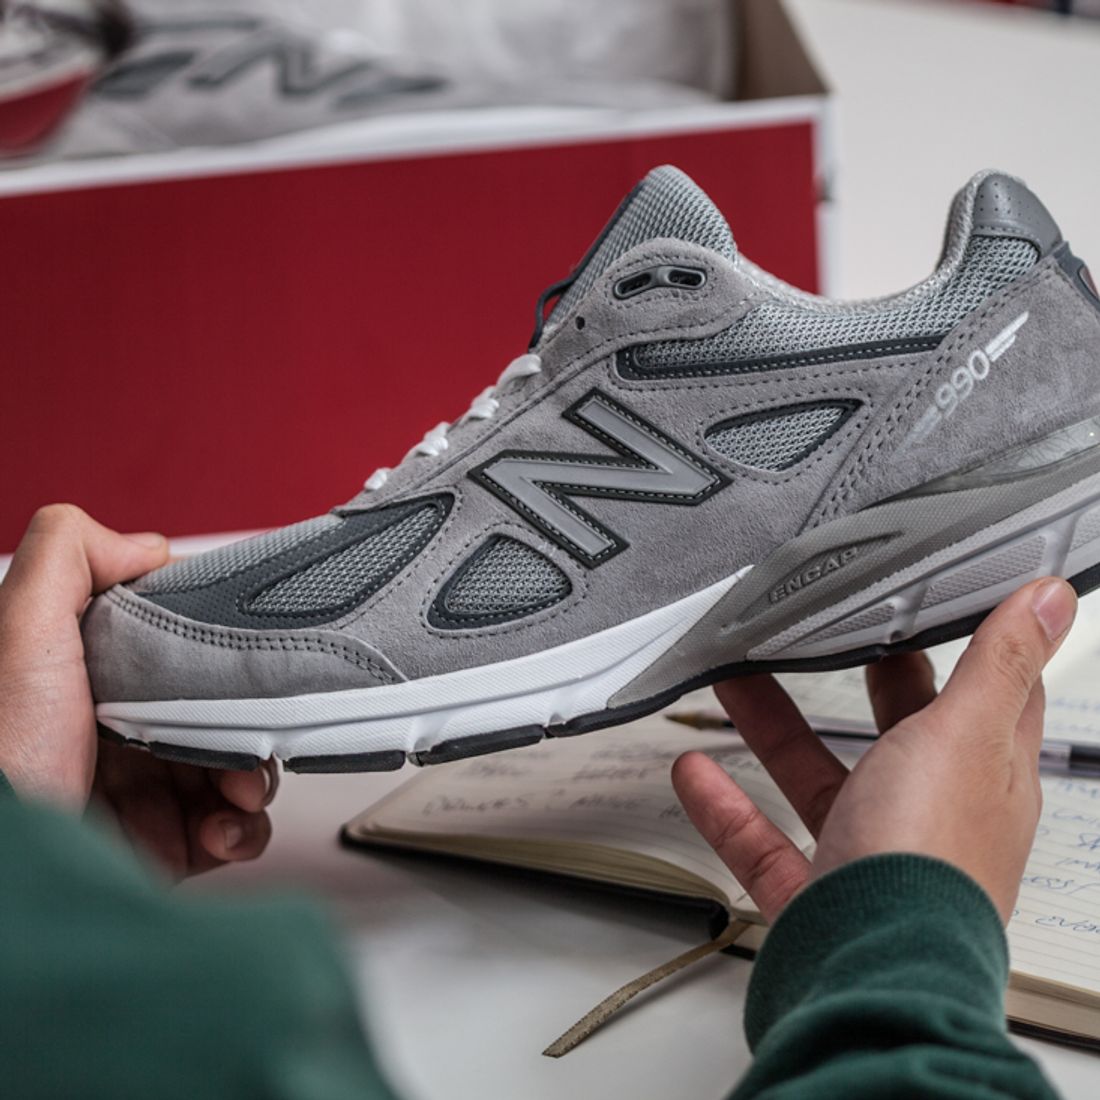 Making Of New Balance 990v4 - Sneaker Freaker